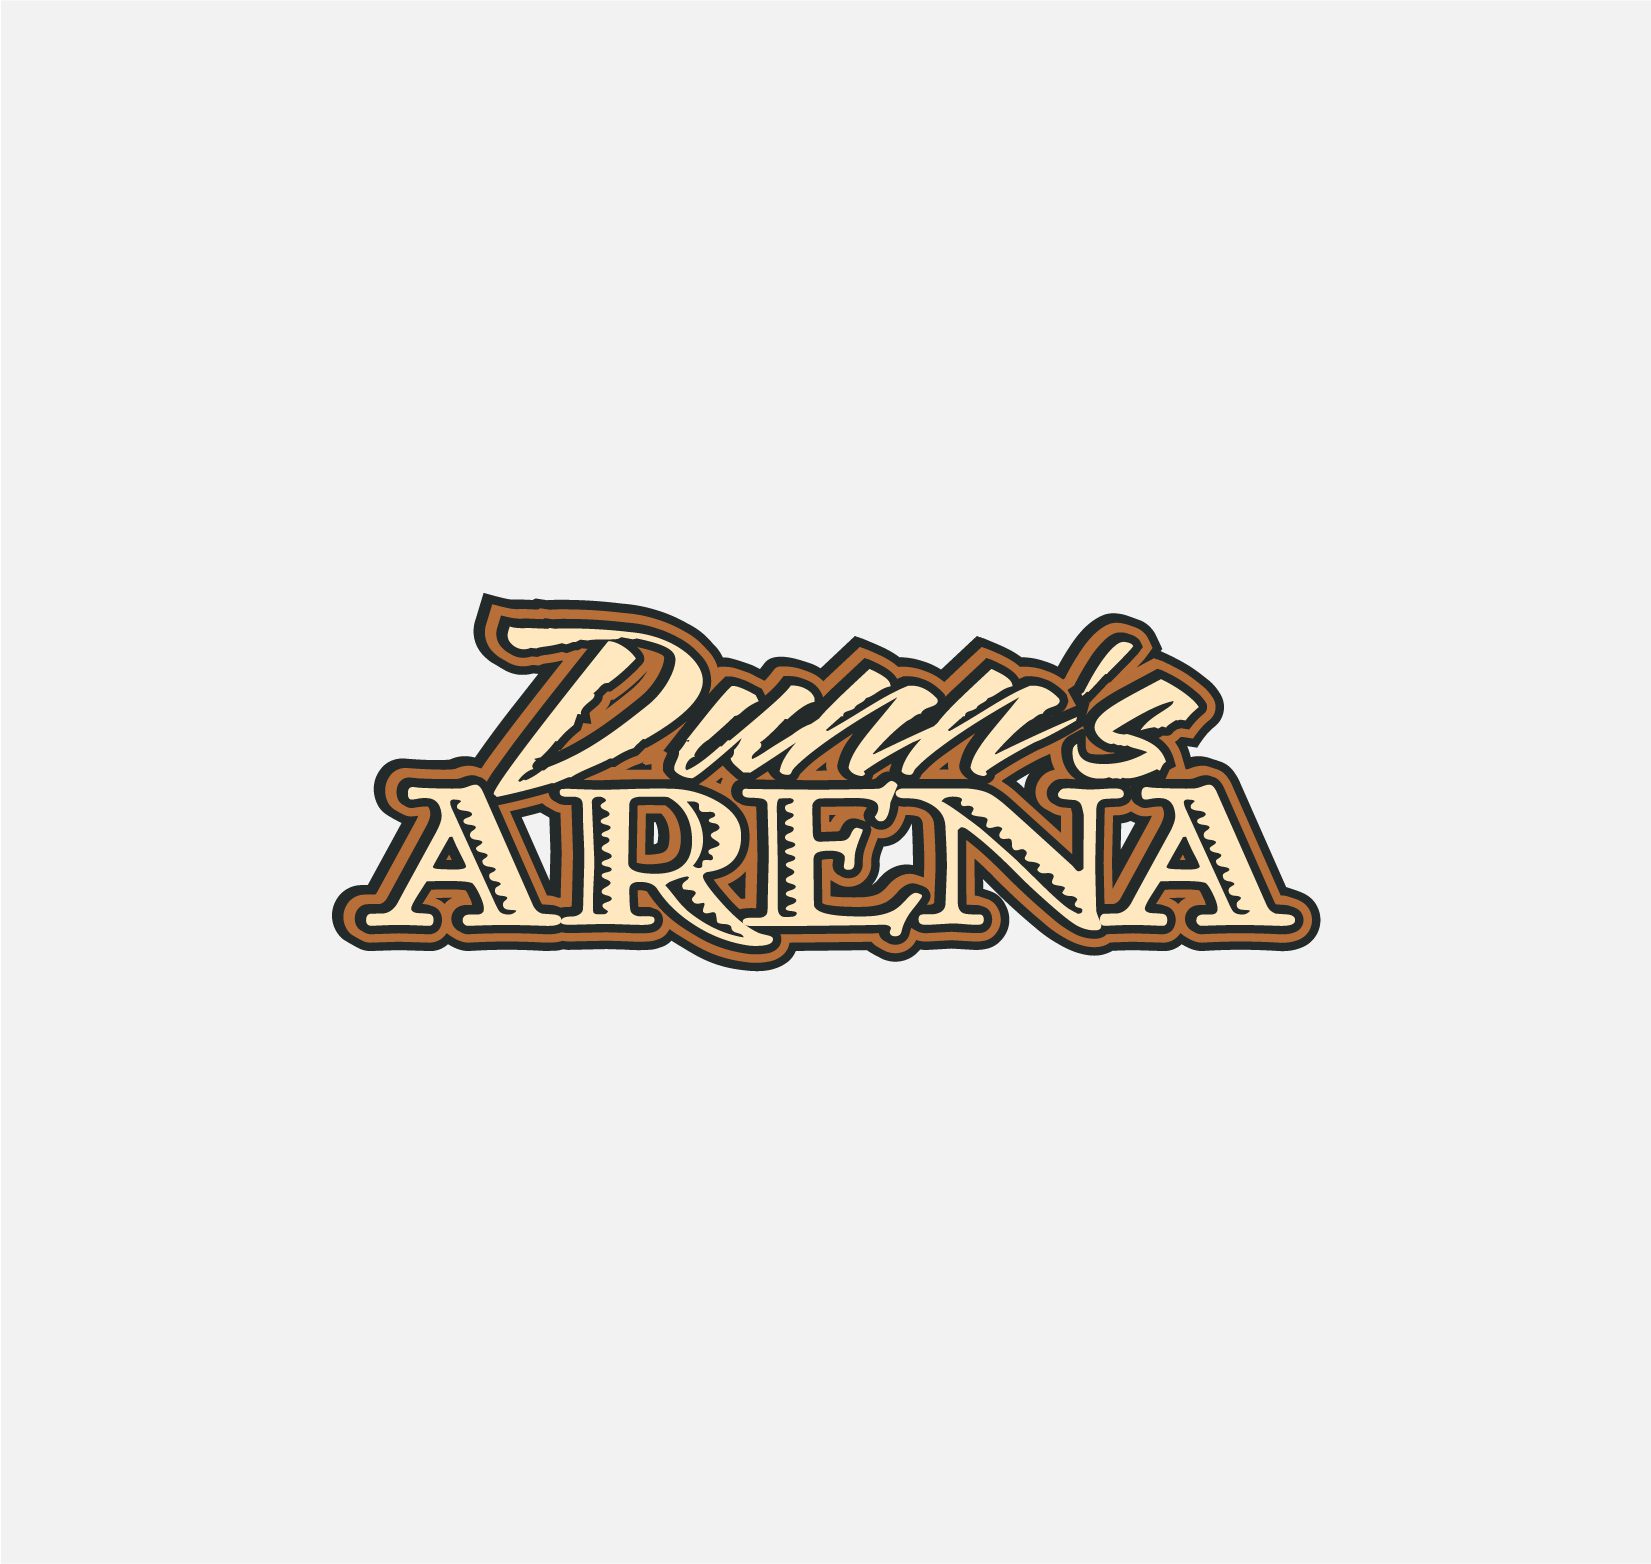 Dunn's Arena logo